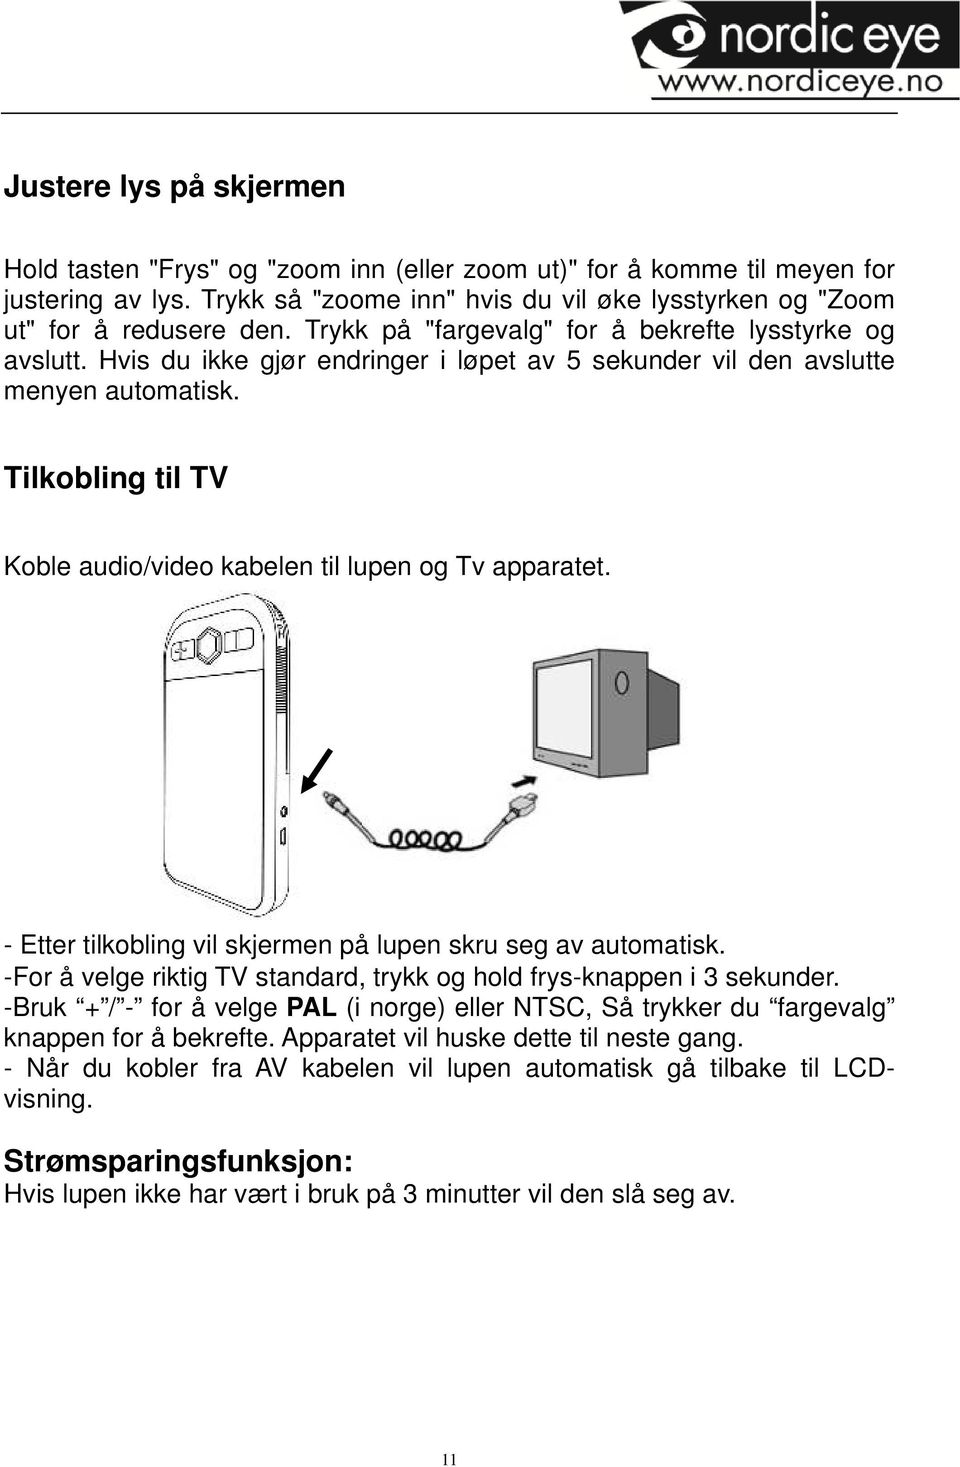 Tilkobling til TV Koble audio/video kabelen til lupen og Tv apparatet. - Etter tilkobling vil skjermen på lupen skru seg av automatisk.